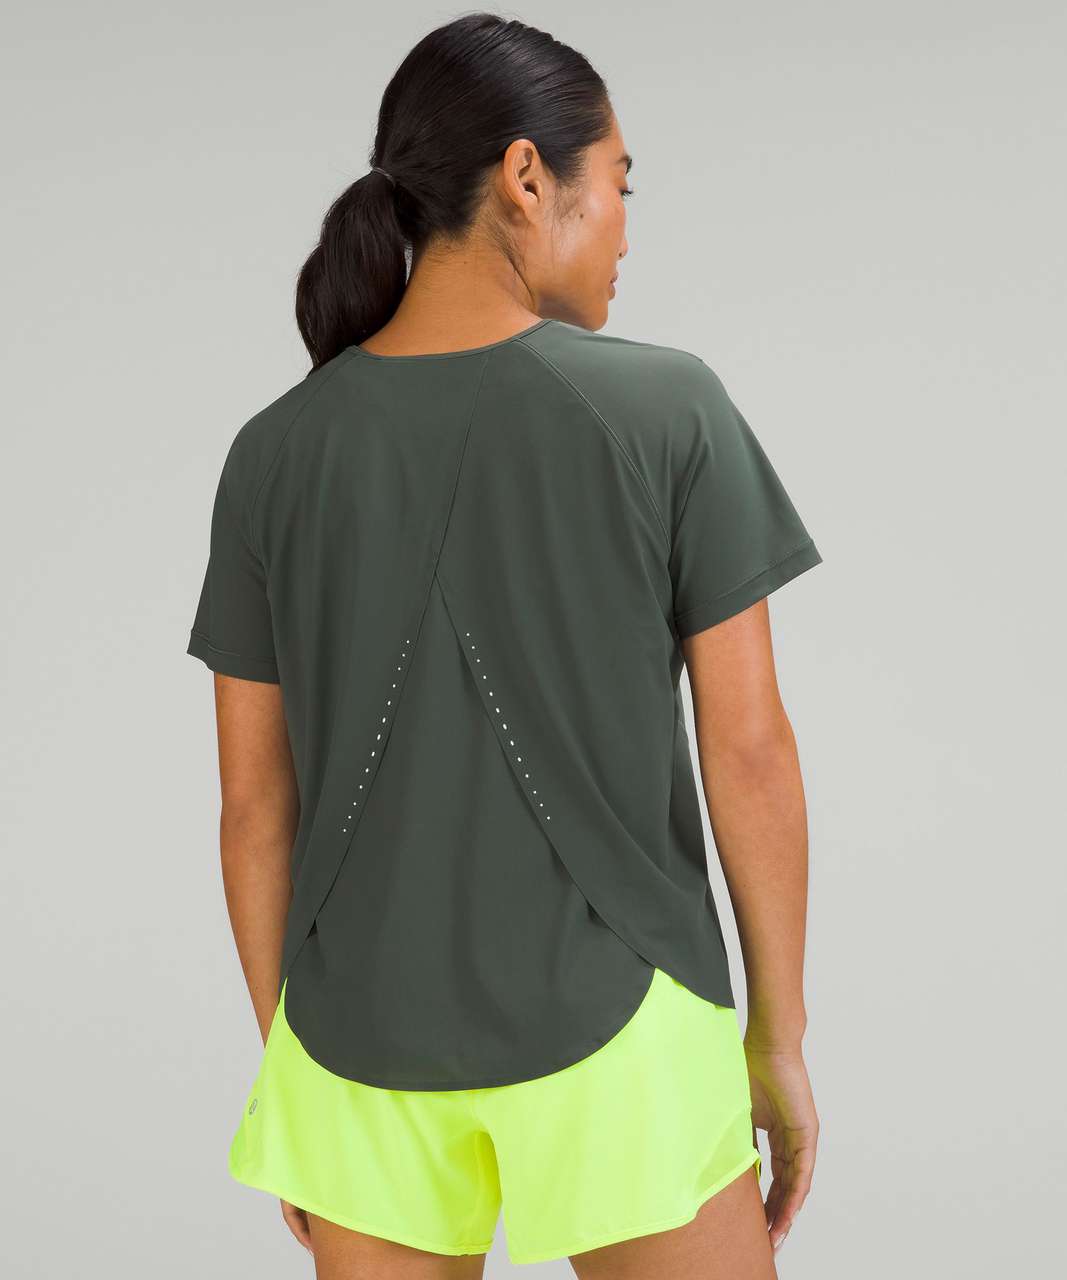 Lululemon UV Protection Running Short Sleeve Shirt - Smoked Spruce